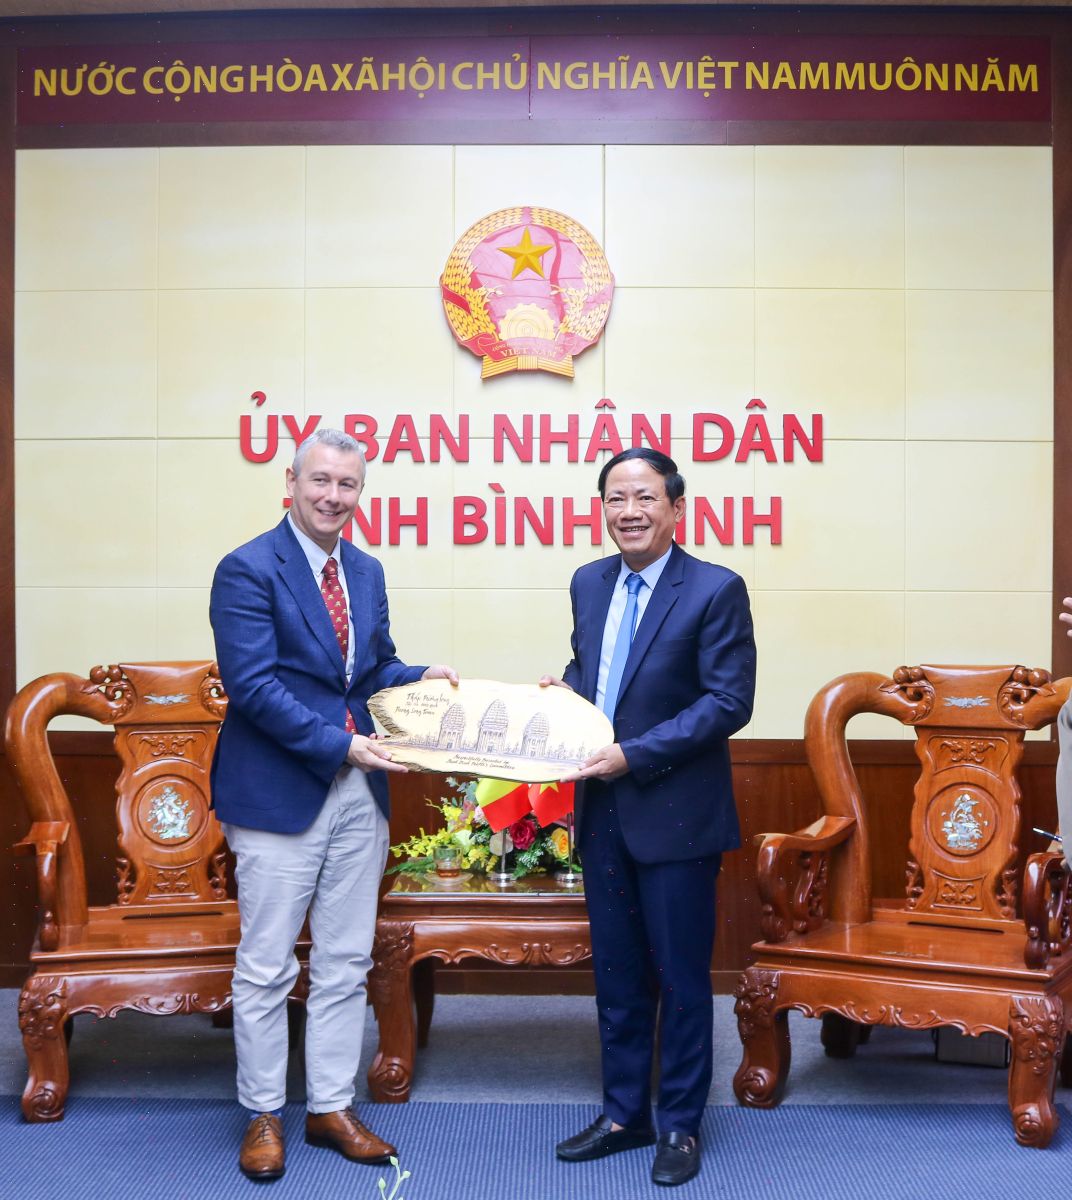 Đại sứ Vương quốc Bỉ tại Việt Nam hứa sẽ kết nối Bình Định với nhà đầu tư của Bỉ- Ảnh 2.